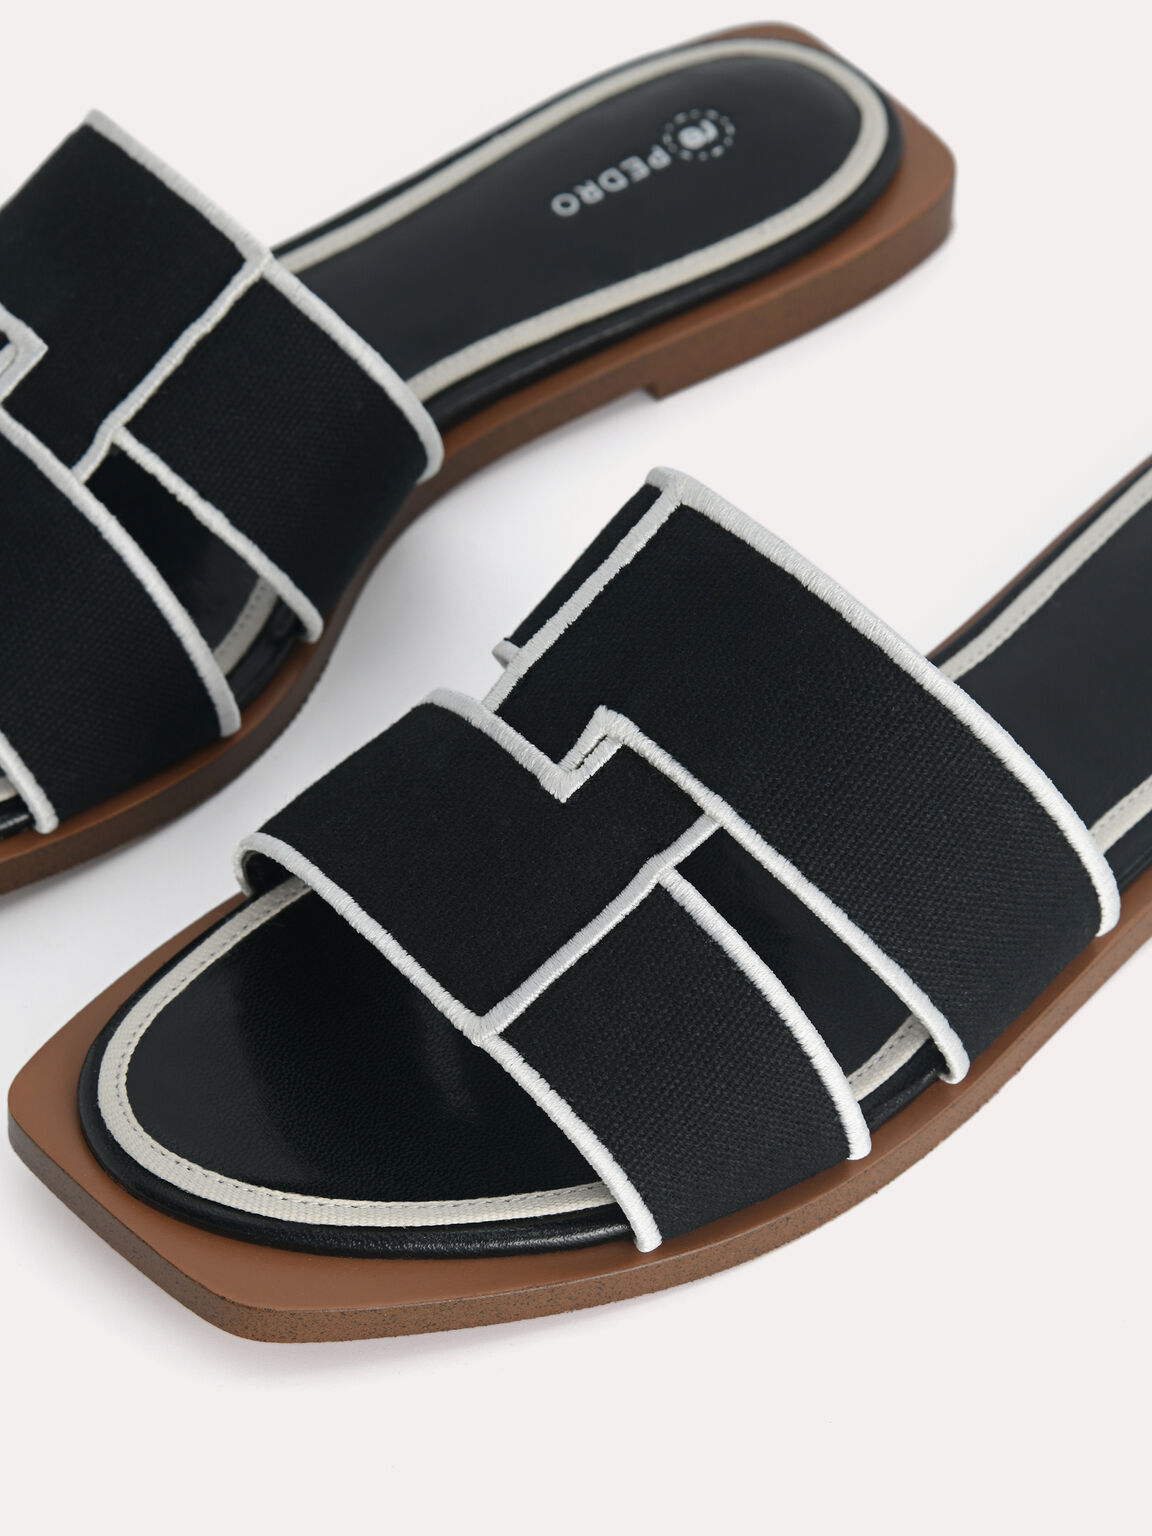 rePEDRO Cross-Strap Sandals, Black